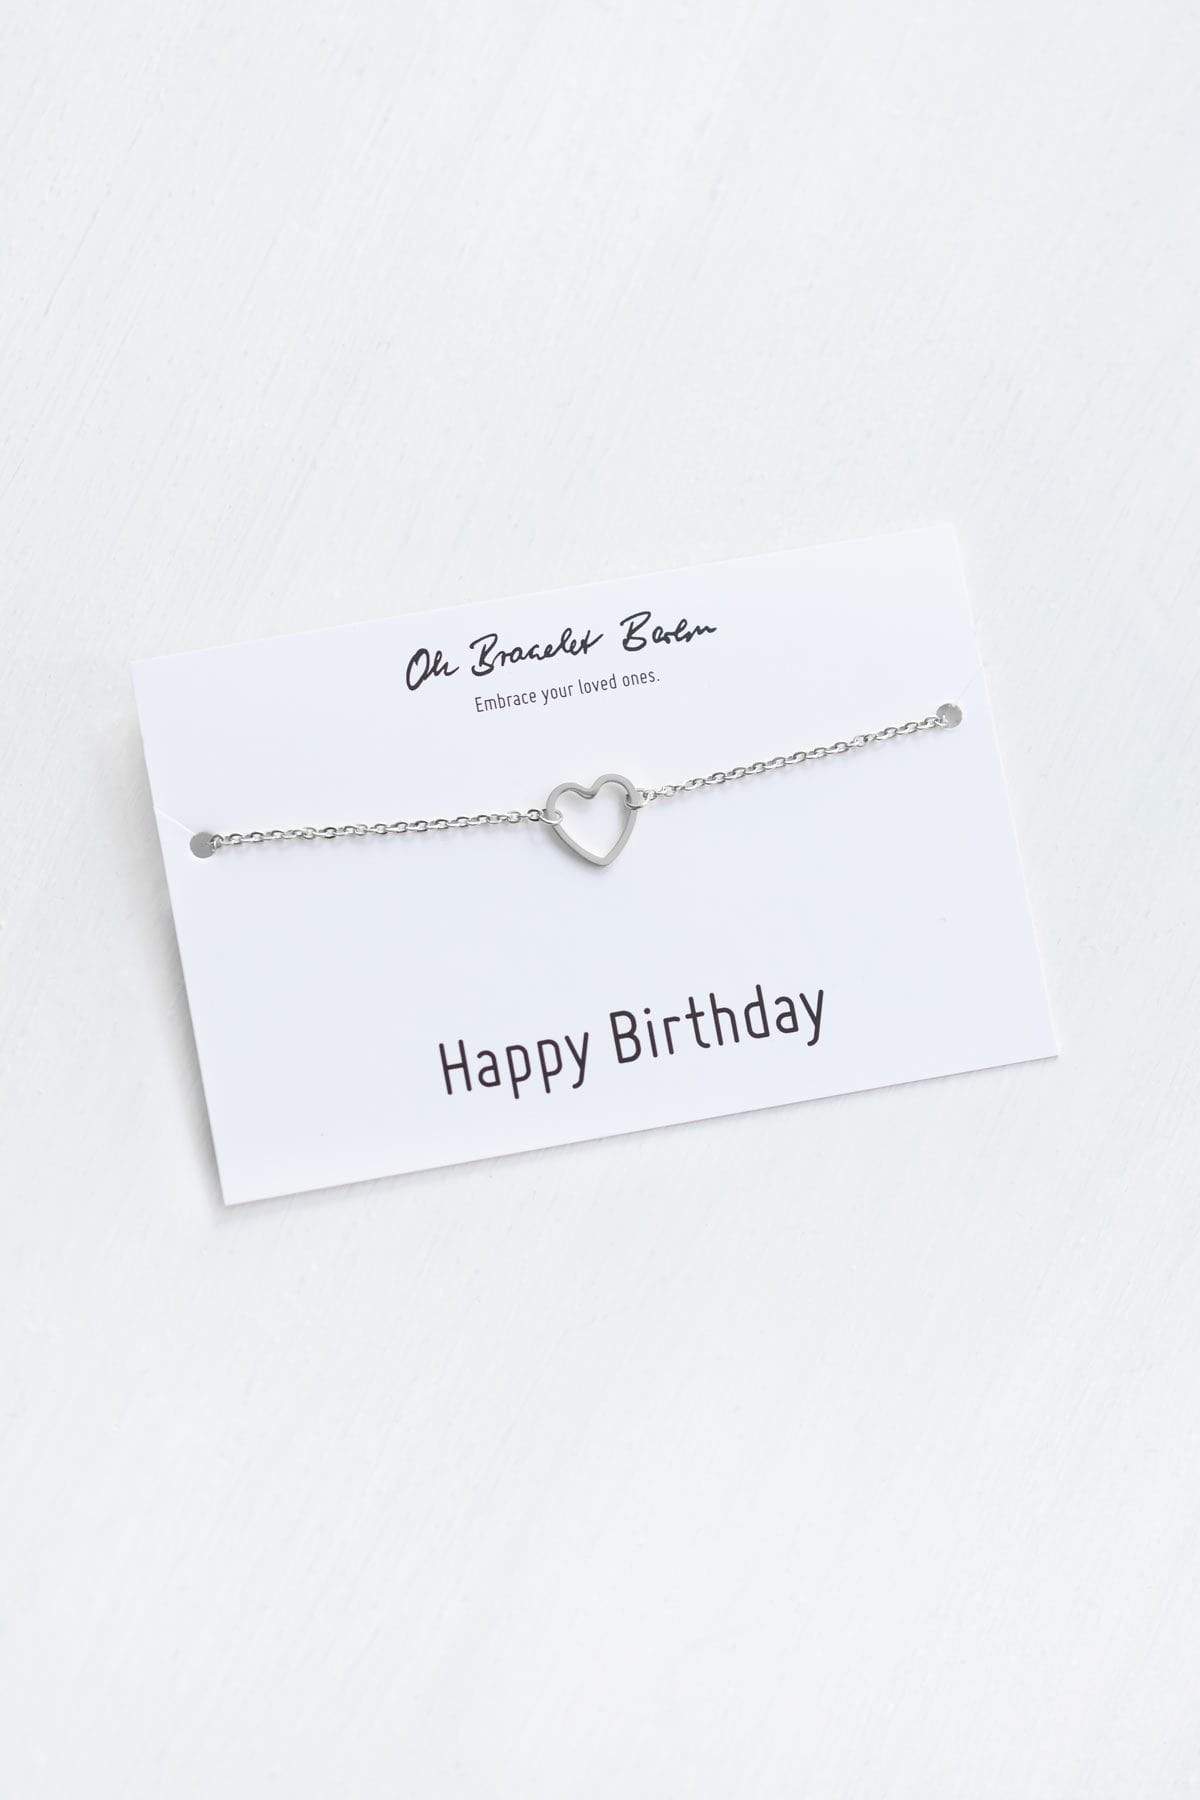 Glückwunschkarte zum Geburtstag präsentiert ein Armband mit Herz in der Farbe Silber